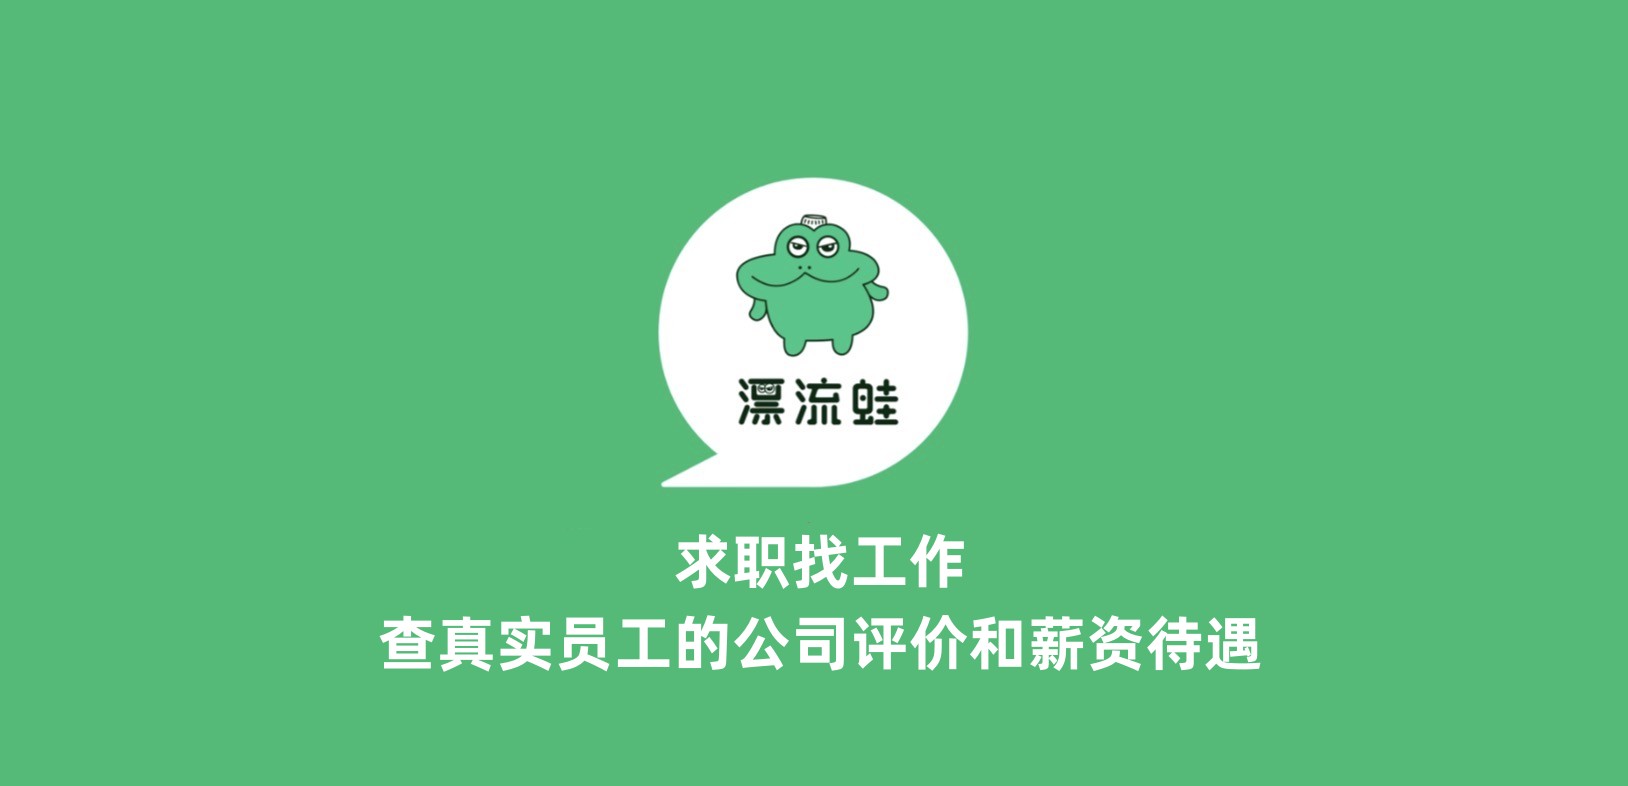 漂流蛙-专栏精选的logo